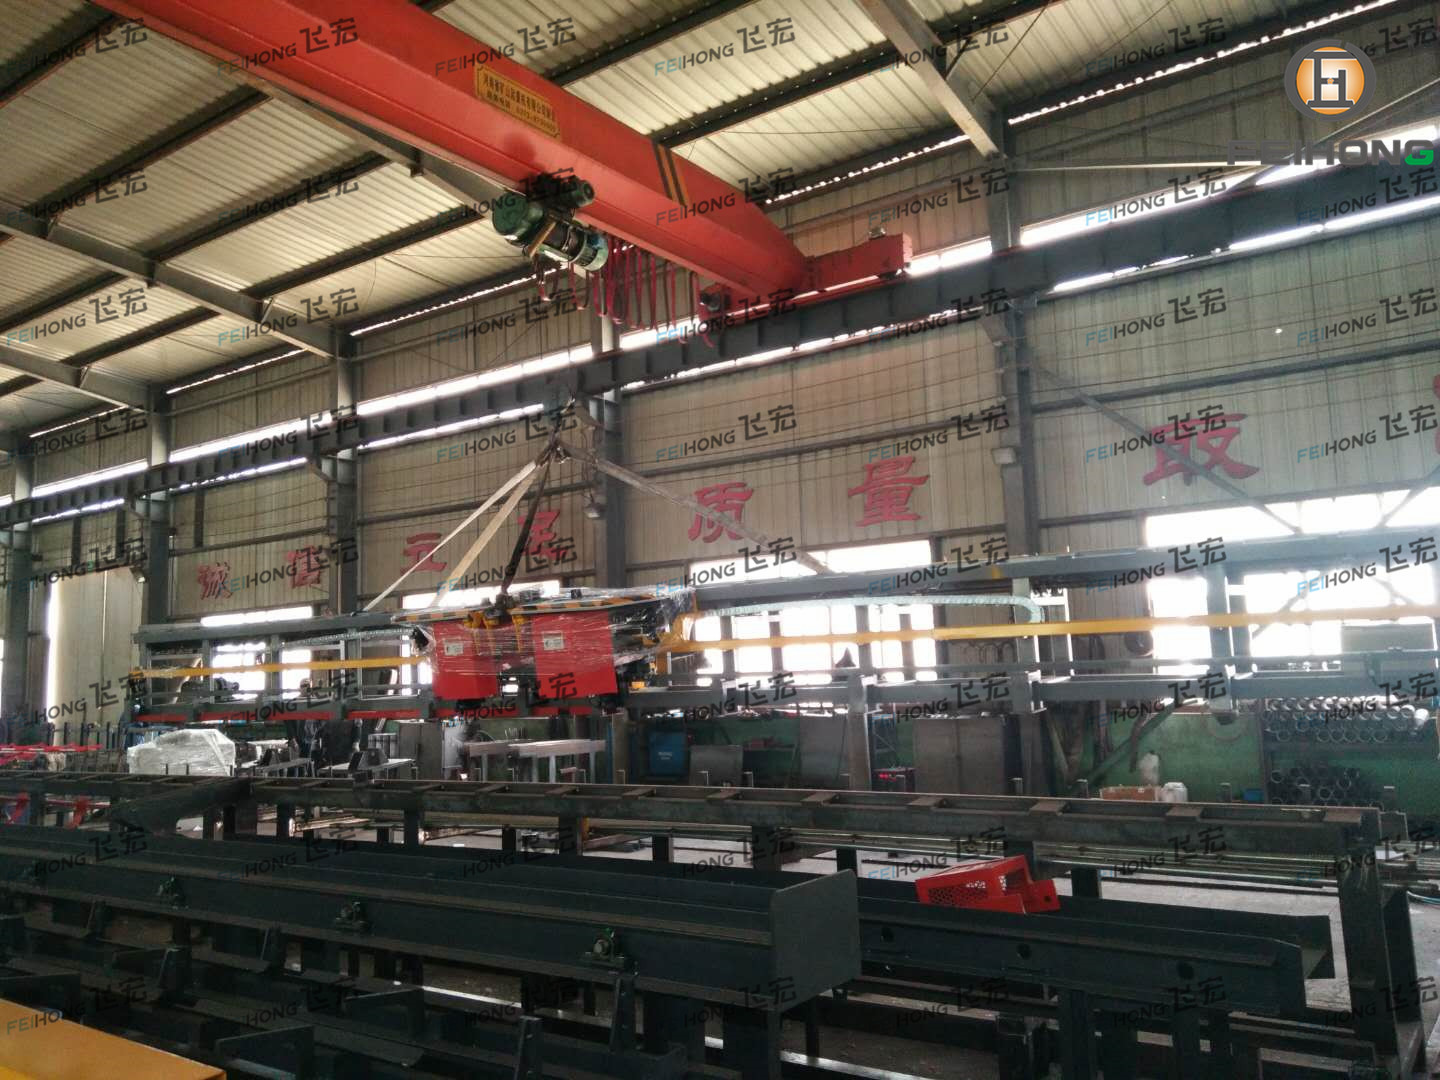 祝贺飞宏1套钢筋加工设备进驻中国中铁一局集团天津公司京德高速项目施工现场